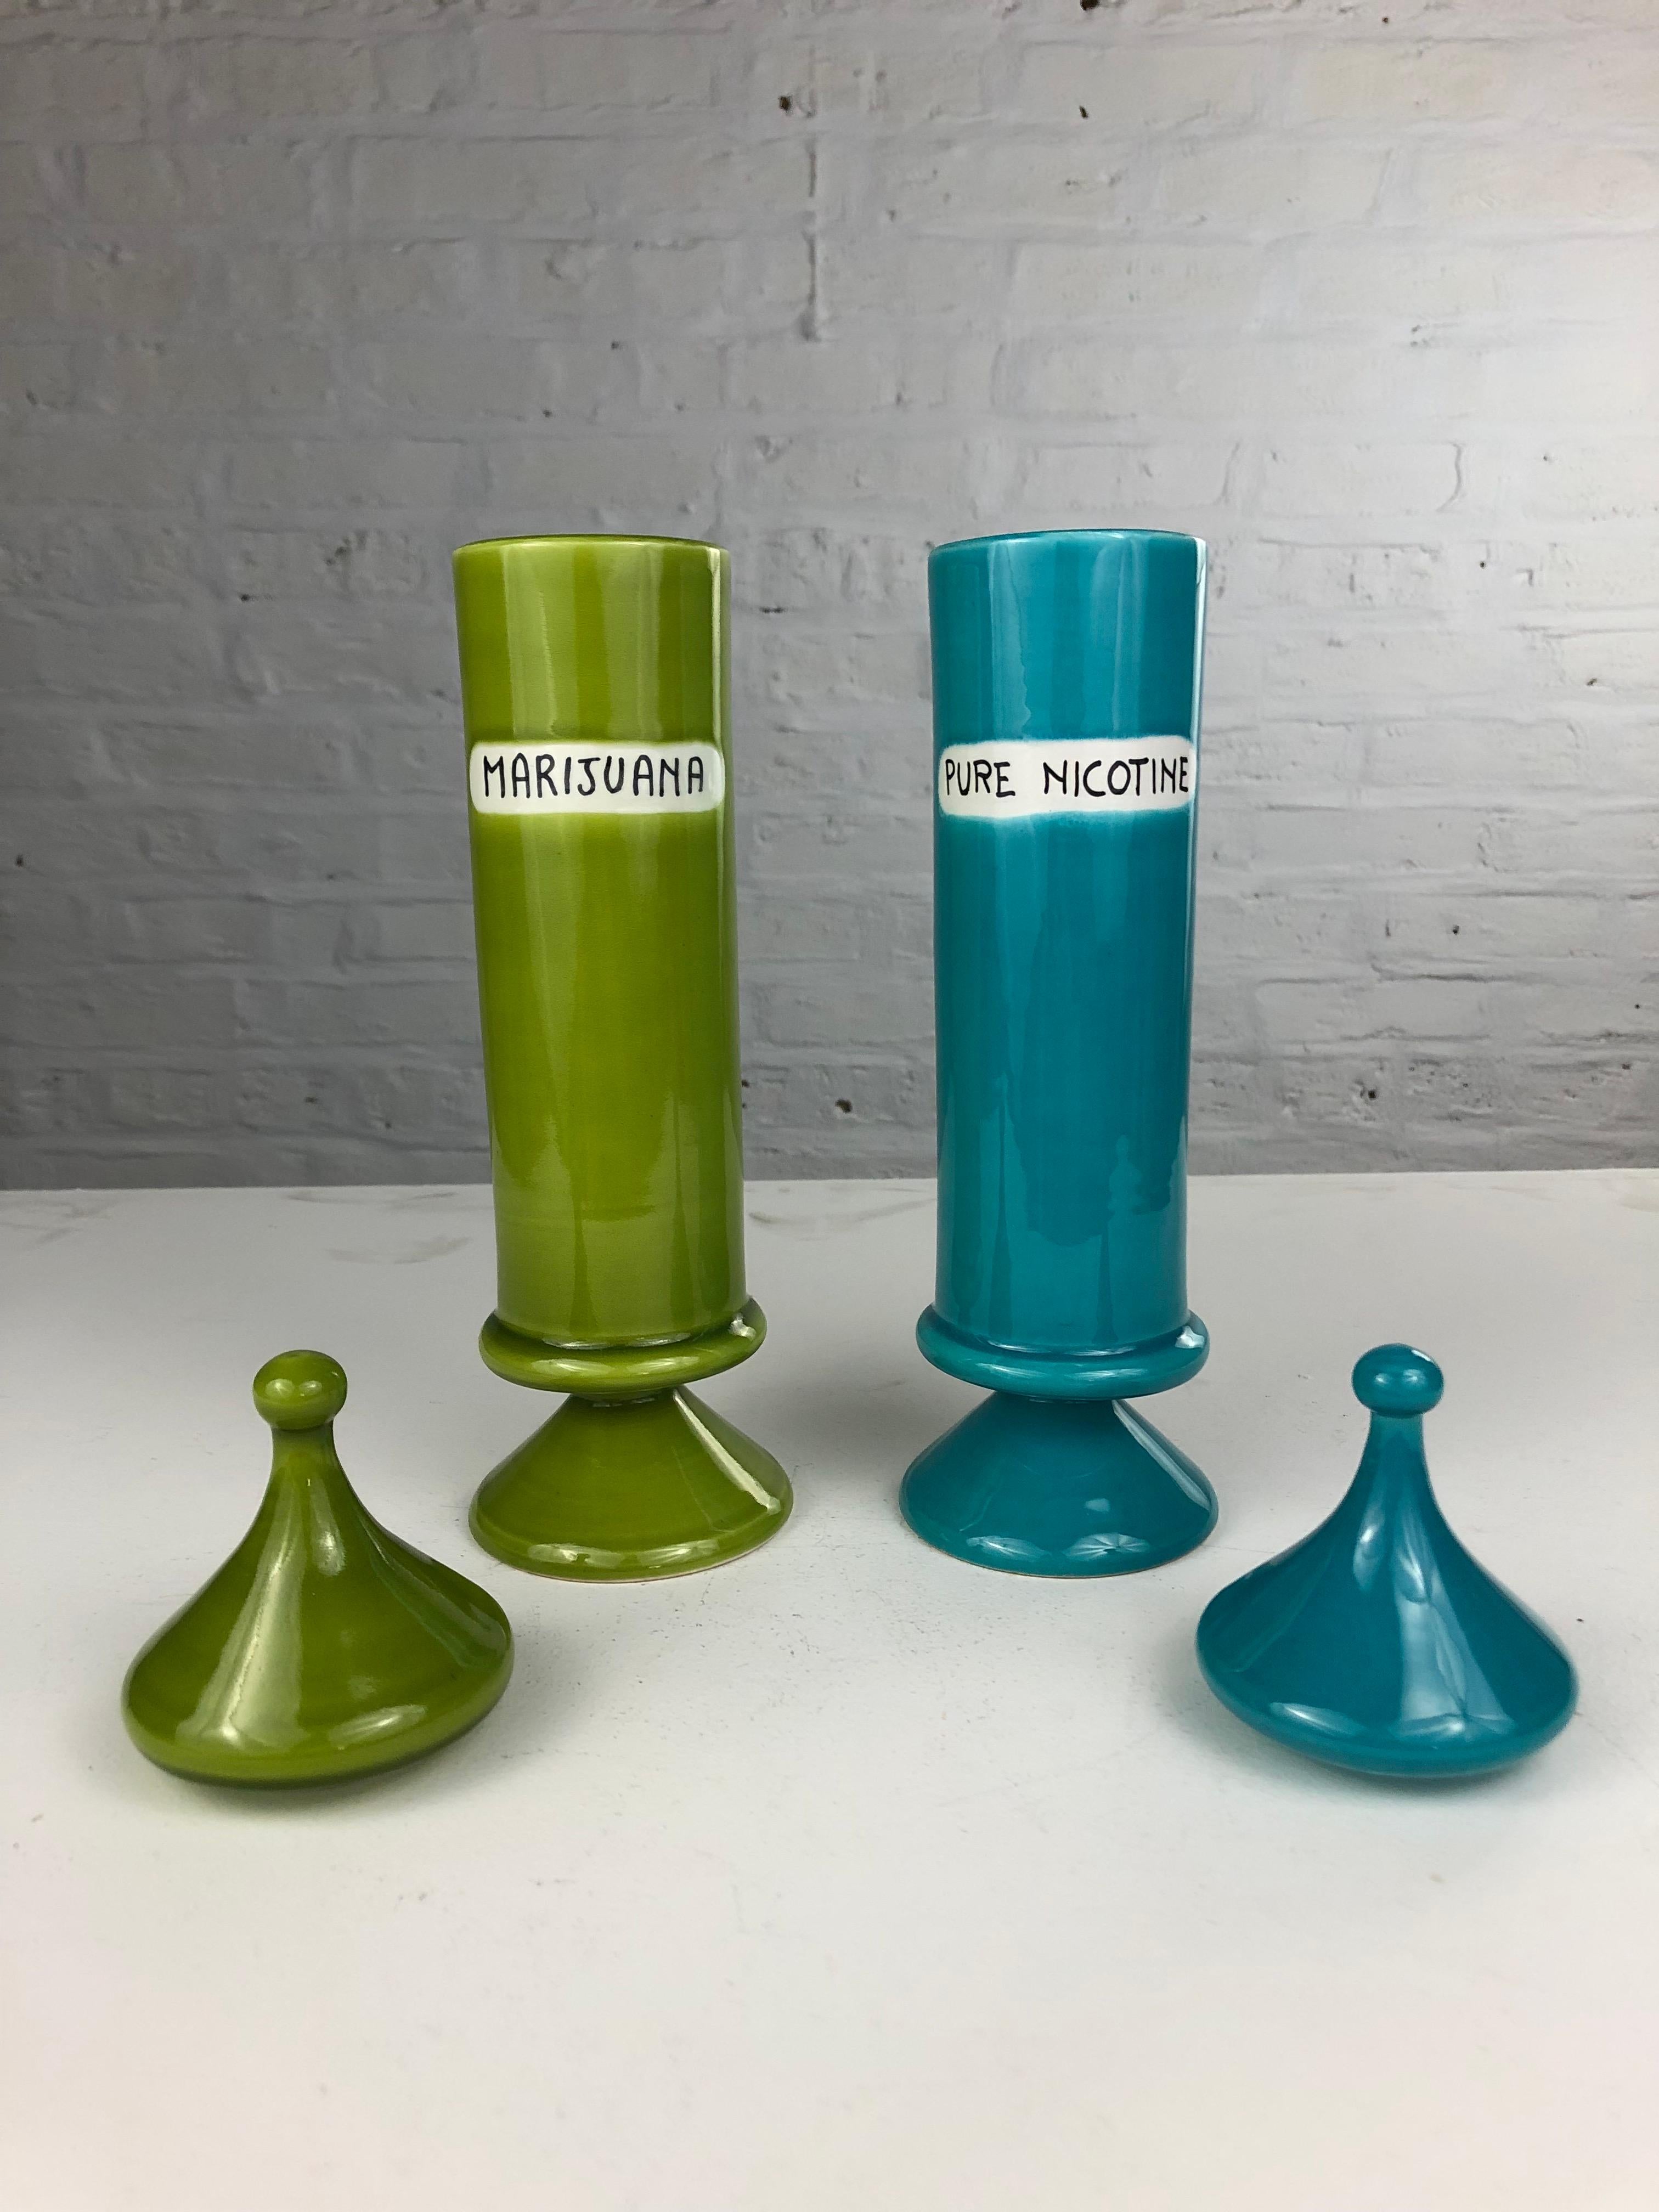 Raymor Schraubgläser aus leuchtend grüner und blauer, hoch glasierter Keramik. Jedes Glas wird einzeln verkauft, mit einem Preis pro Glas, so dass Sammler ihr eigenes einzigartiges Set zusammenstellen können. Die in Italien von Bitossi exklusiv für